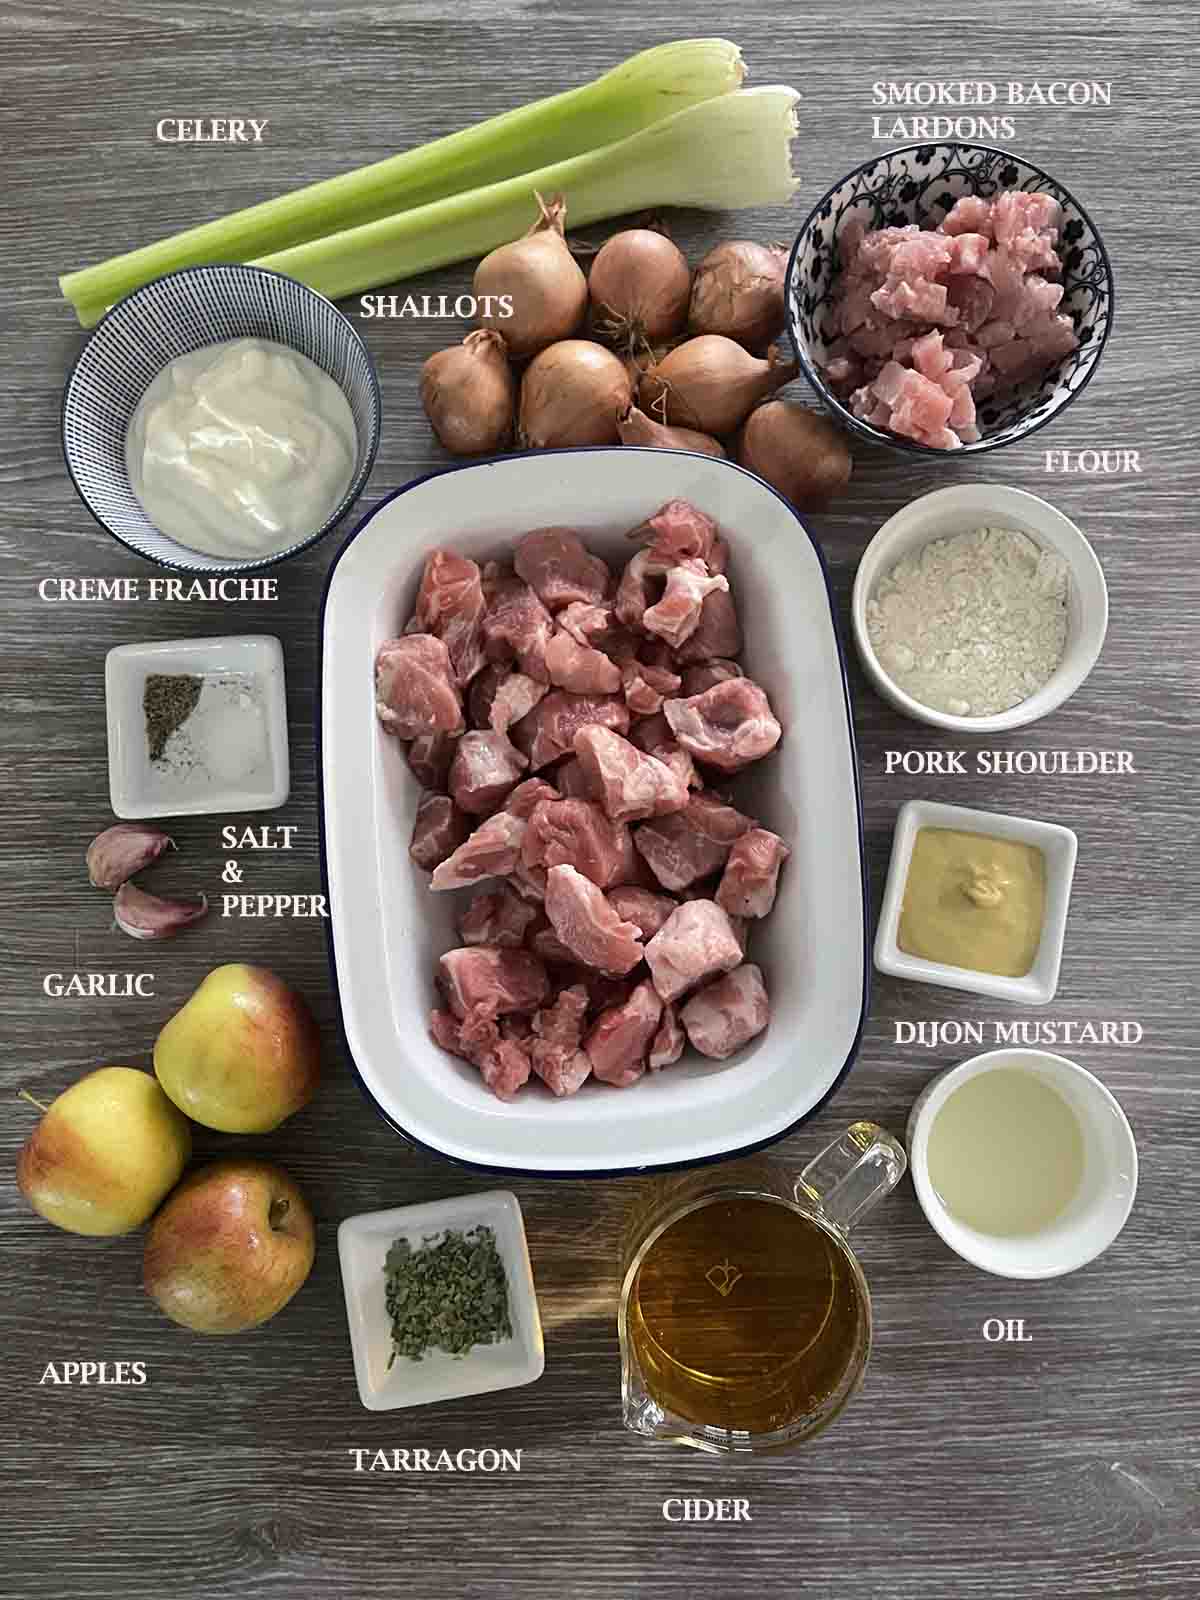 ingredients including pork, apples, and cider.